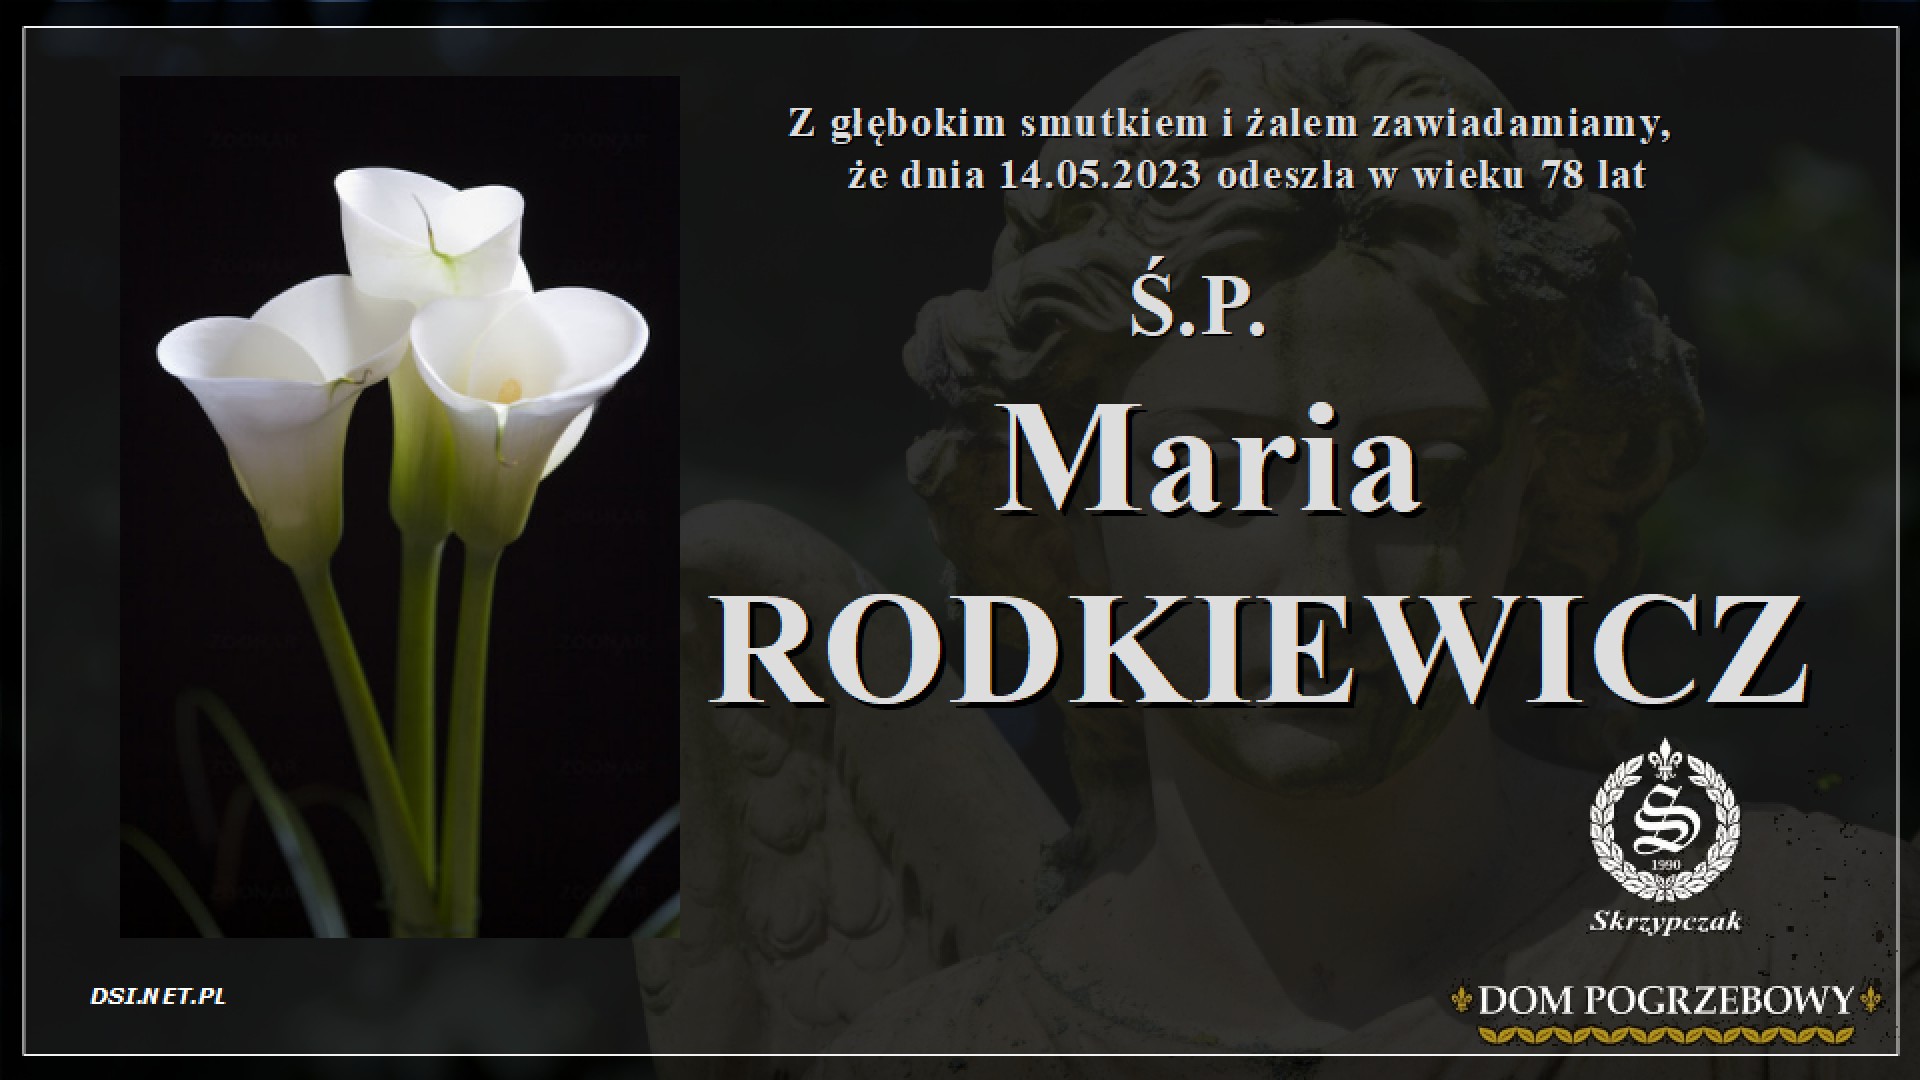 Ś.P. Maria Rodkiewicz